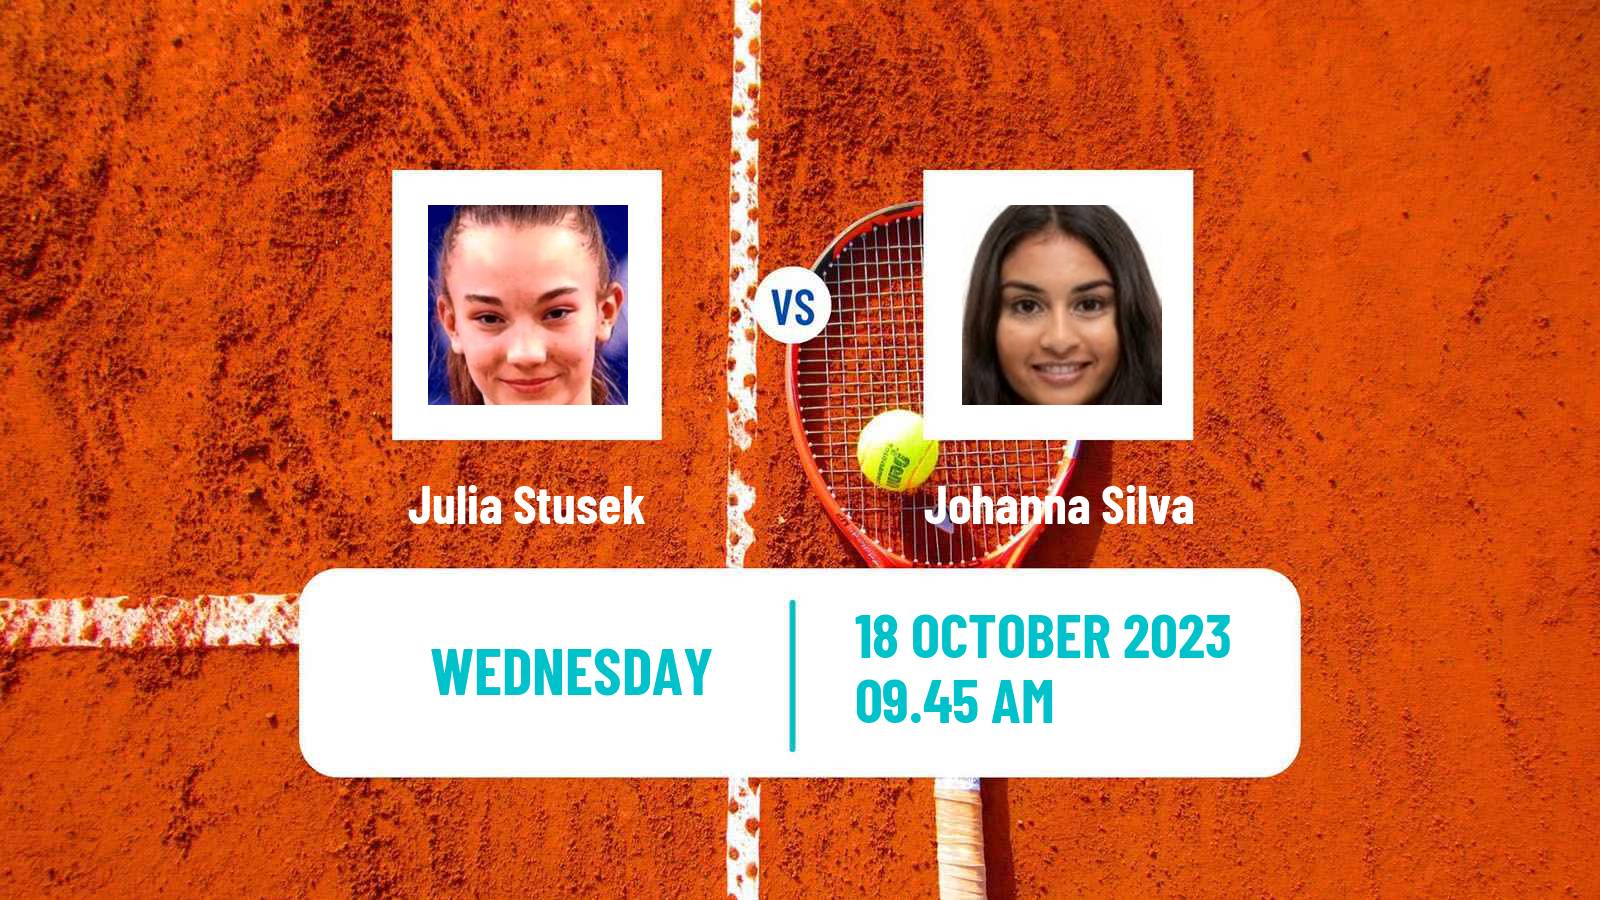 Tennis ITF W60 Hamburg Women Julia Stusek - Johanna Silva